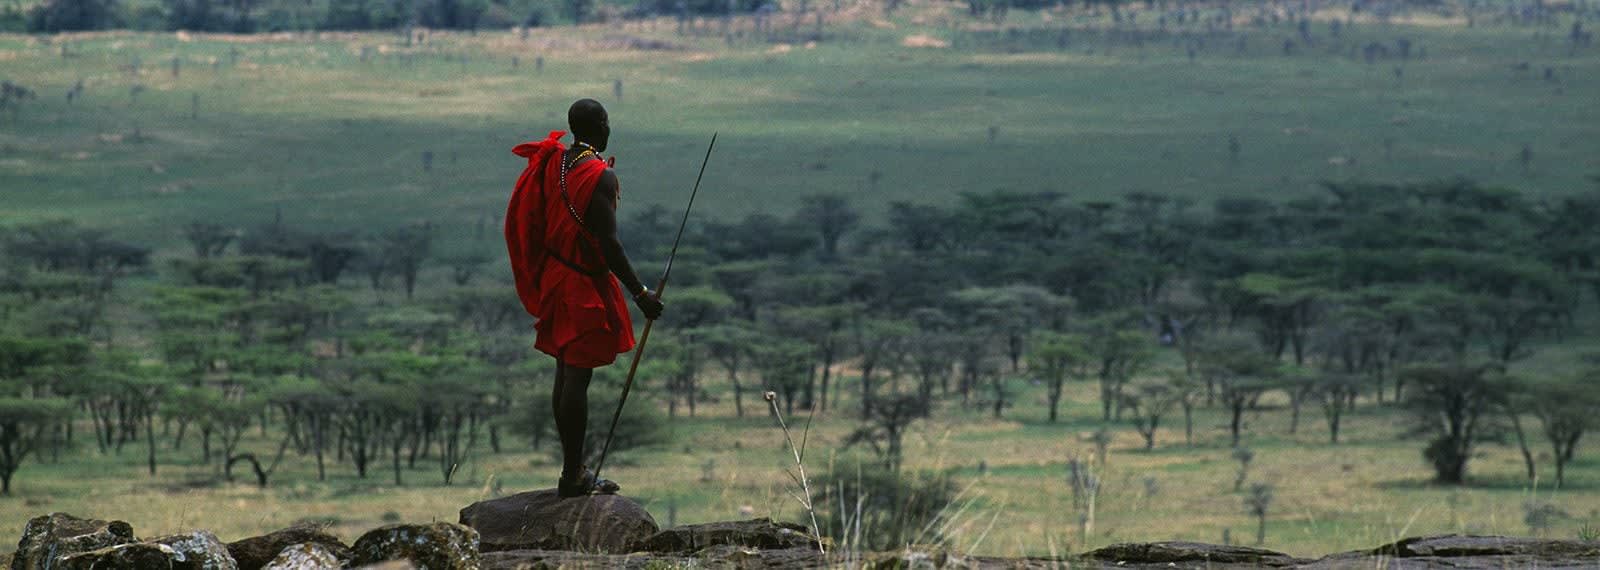 Matjaž Krivic, Masai Mara Kenya, 2002 – 2006